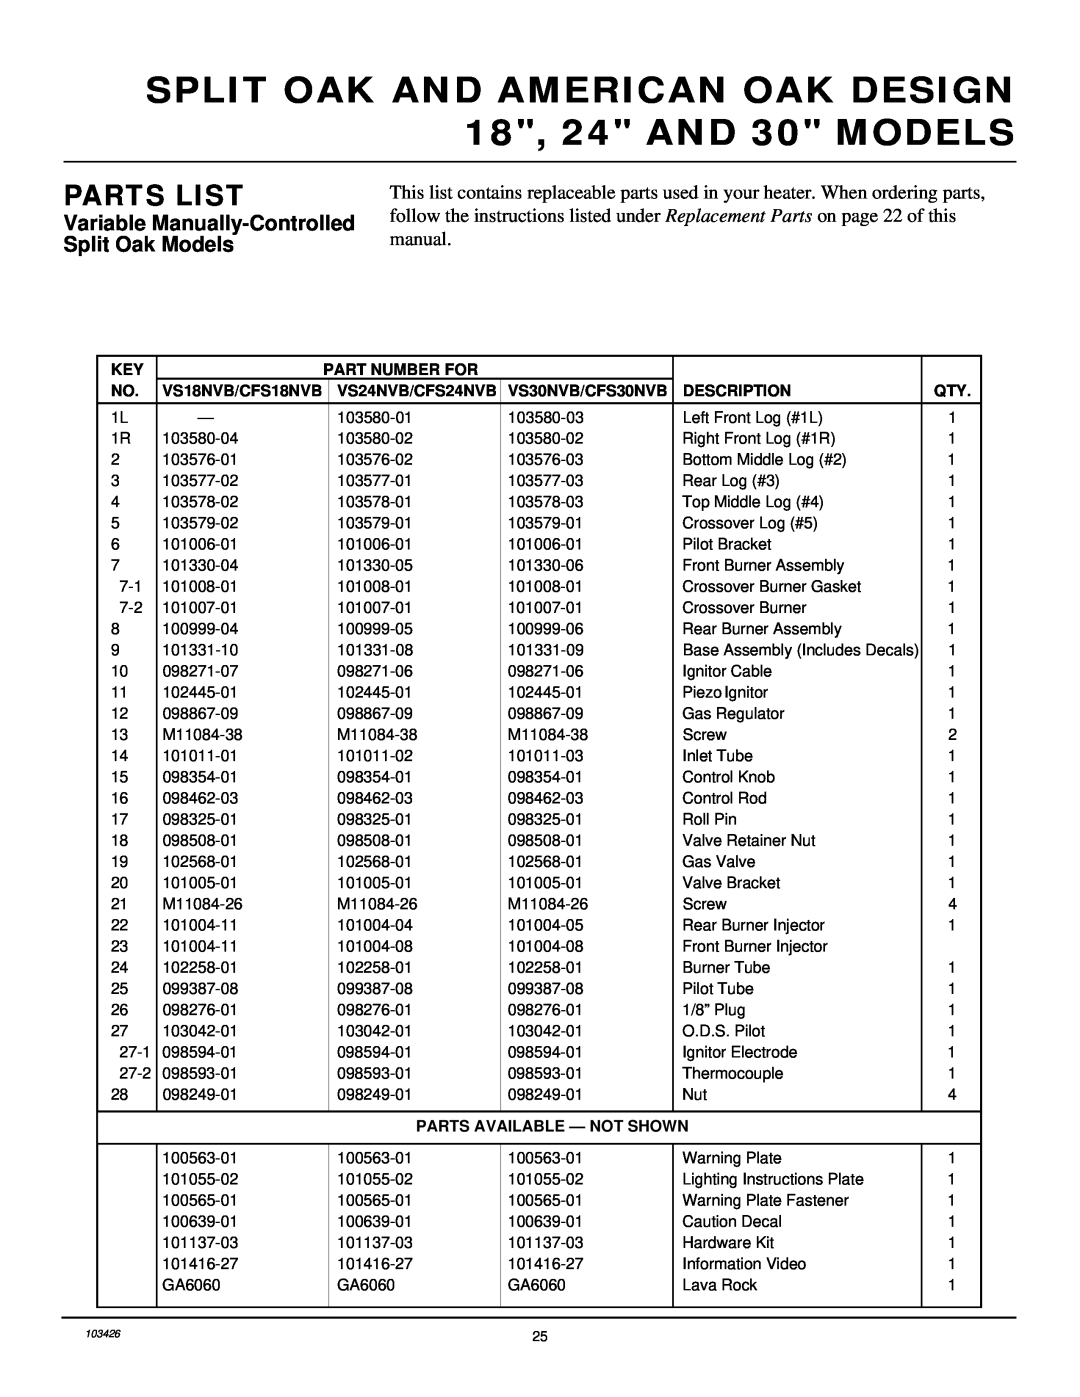 Desa 103426-01 Parts List, Variable Manually-ControlledSplit Oak Models, Part Number For, VS18NVB/CFS18NVB, Description 